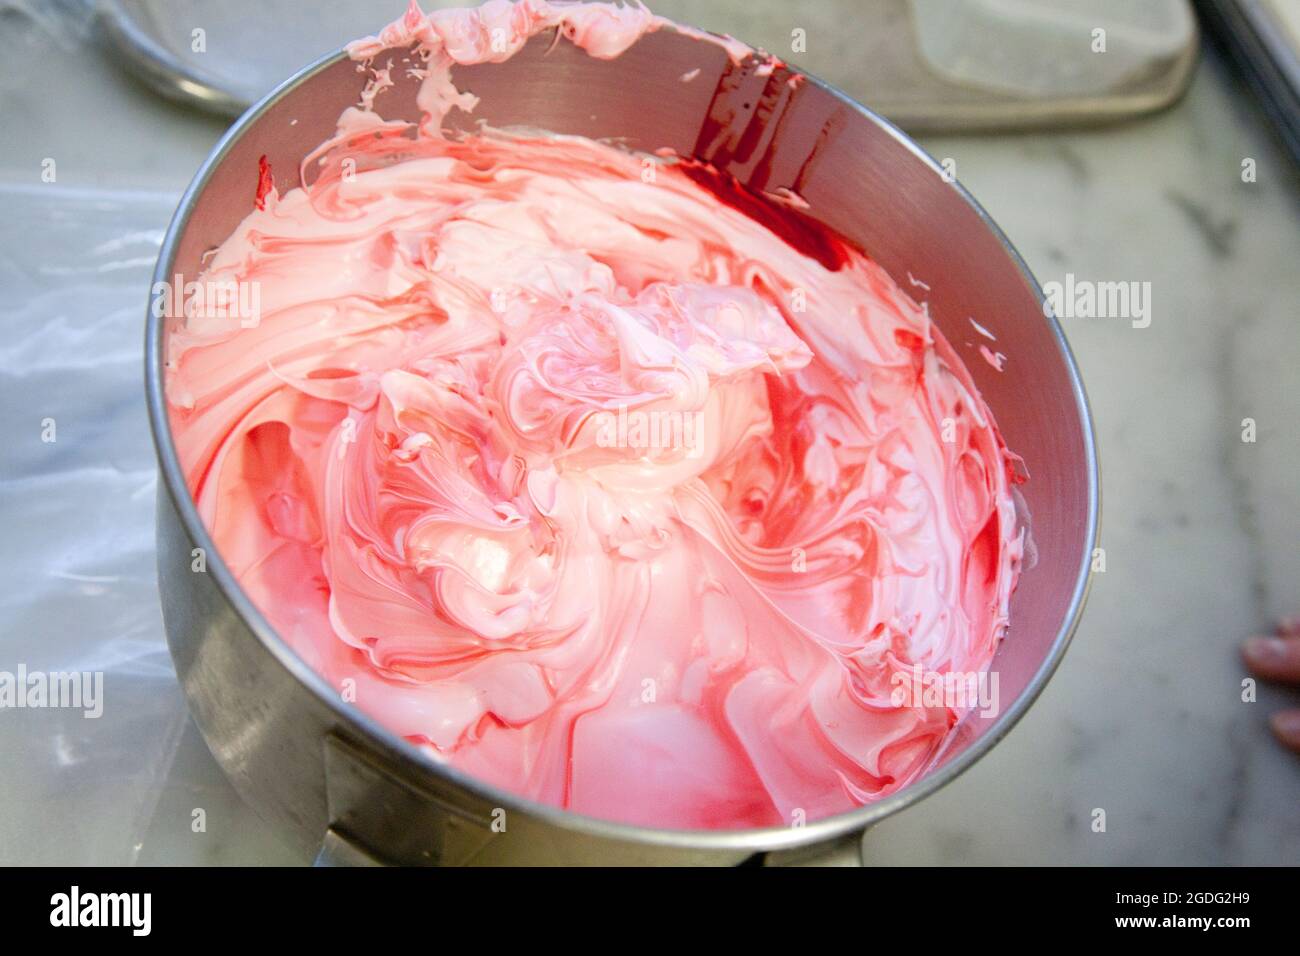 Le blanc d'oeuf rose forme la base pour les macarons de fraise. Banque D'Images